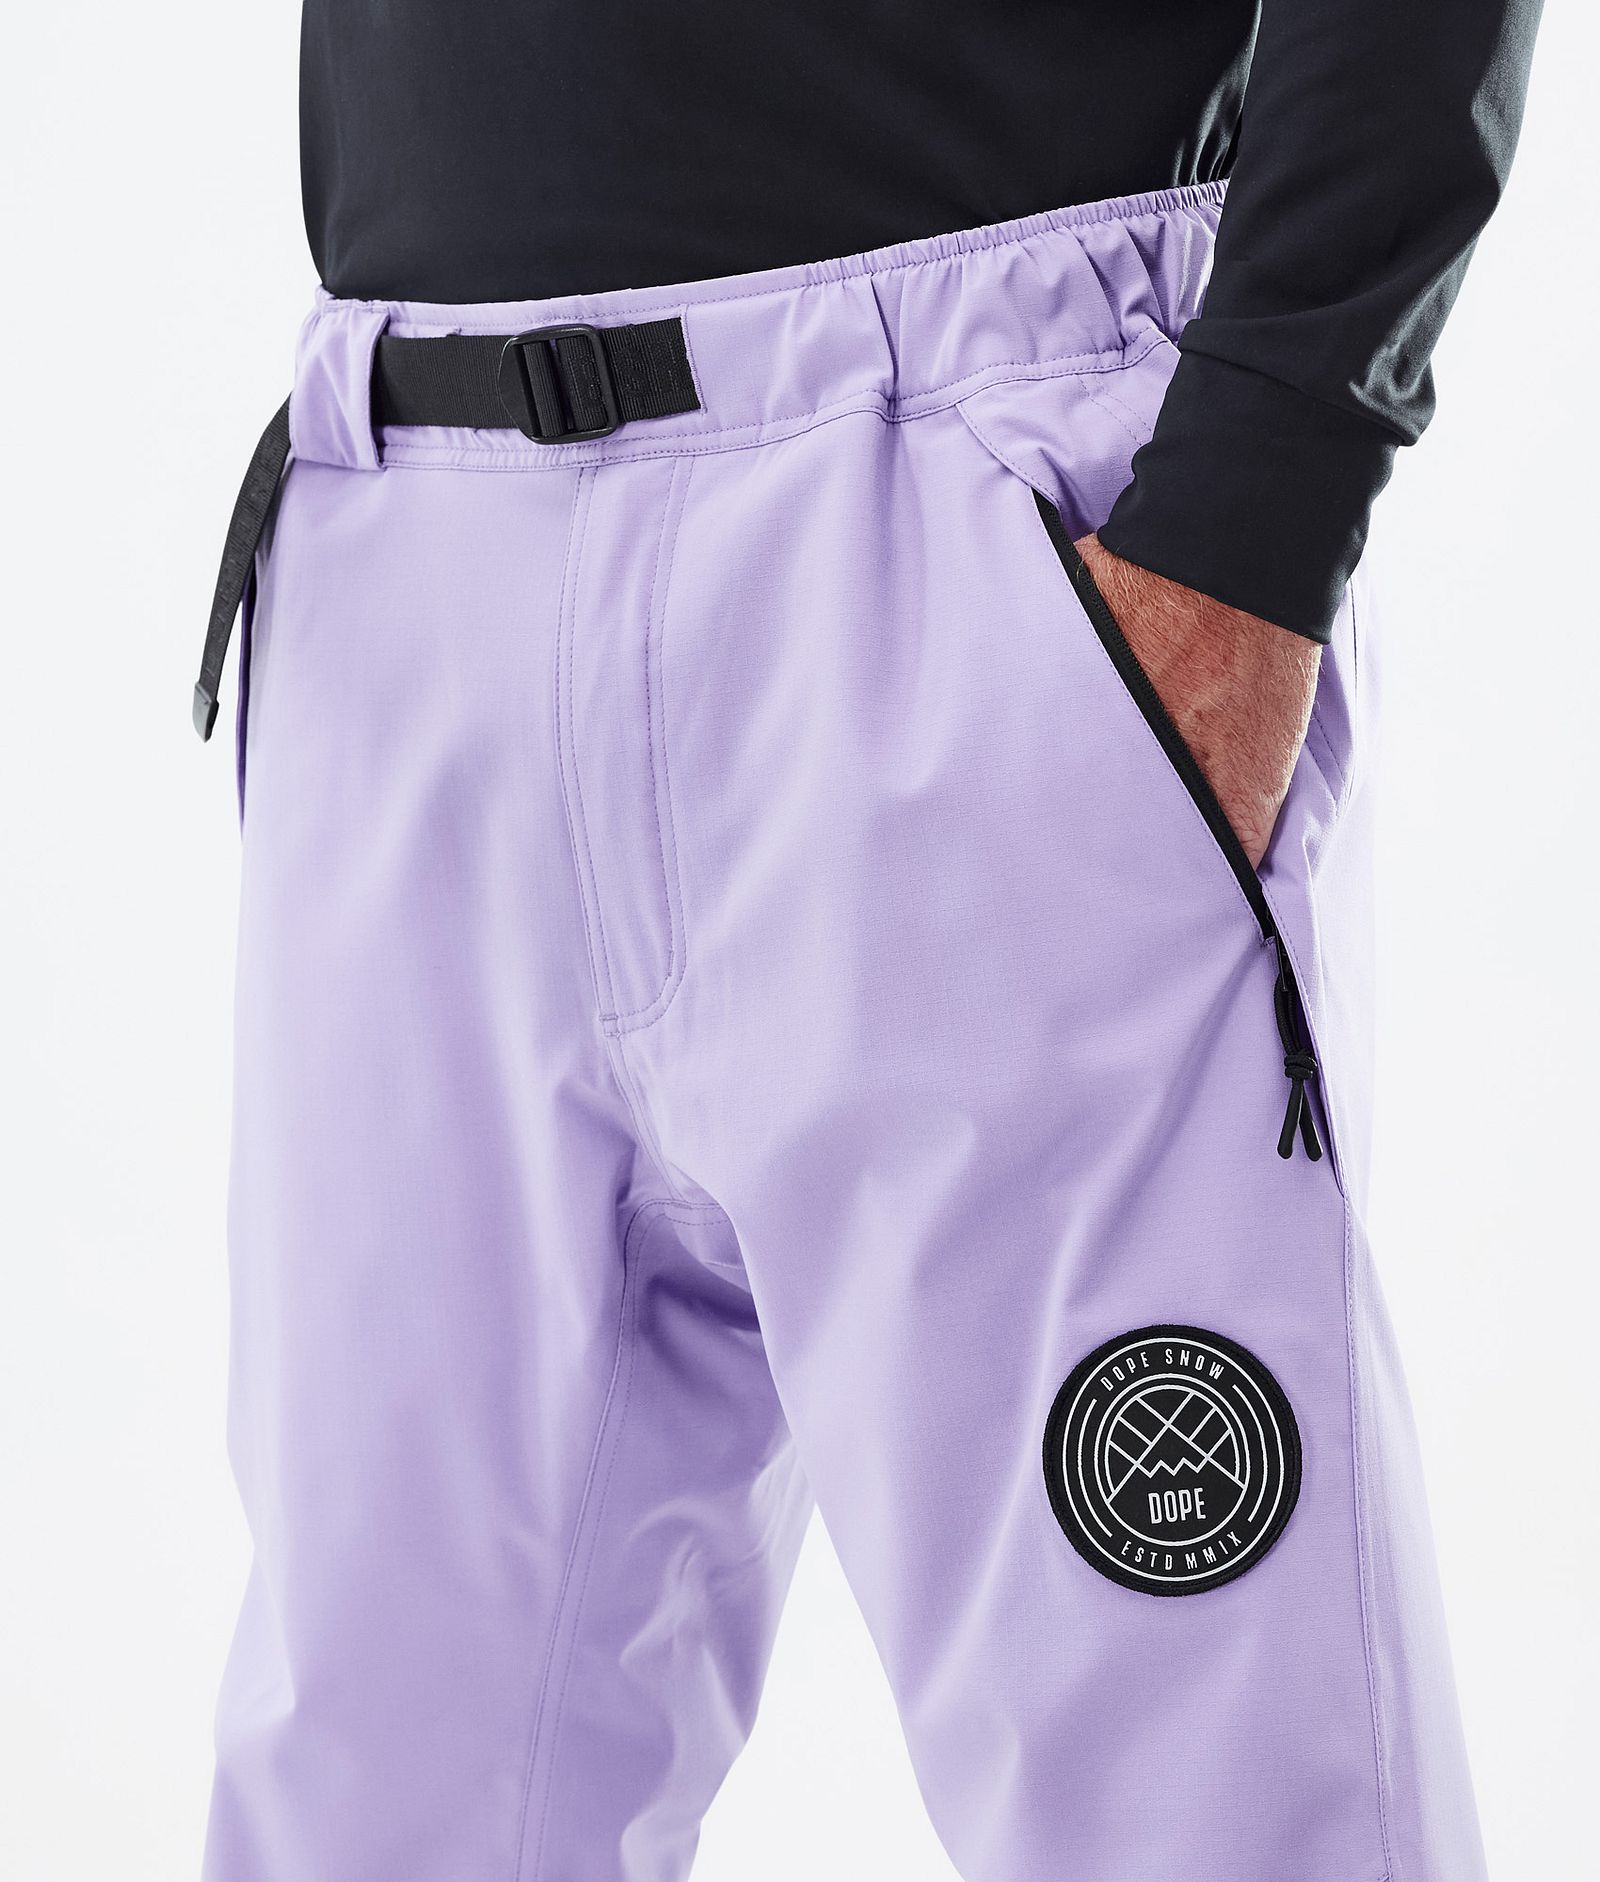 Blizzard 2022 Pantalon de Ski Homme Faded violet